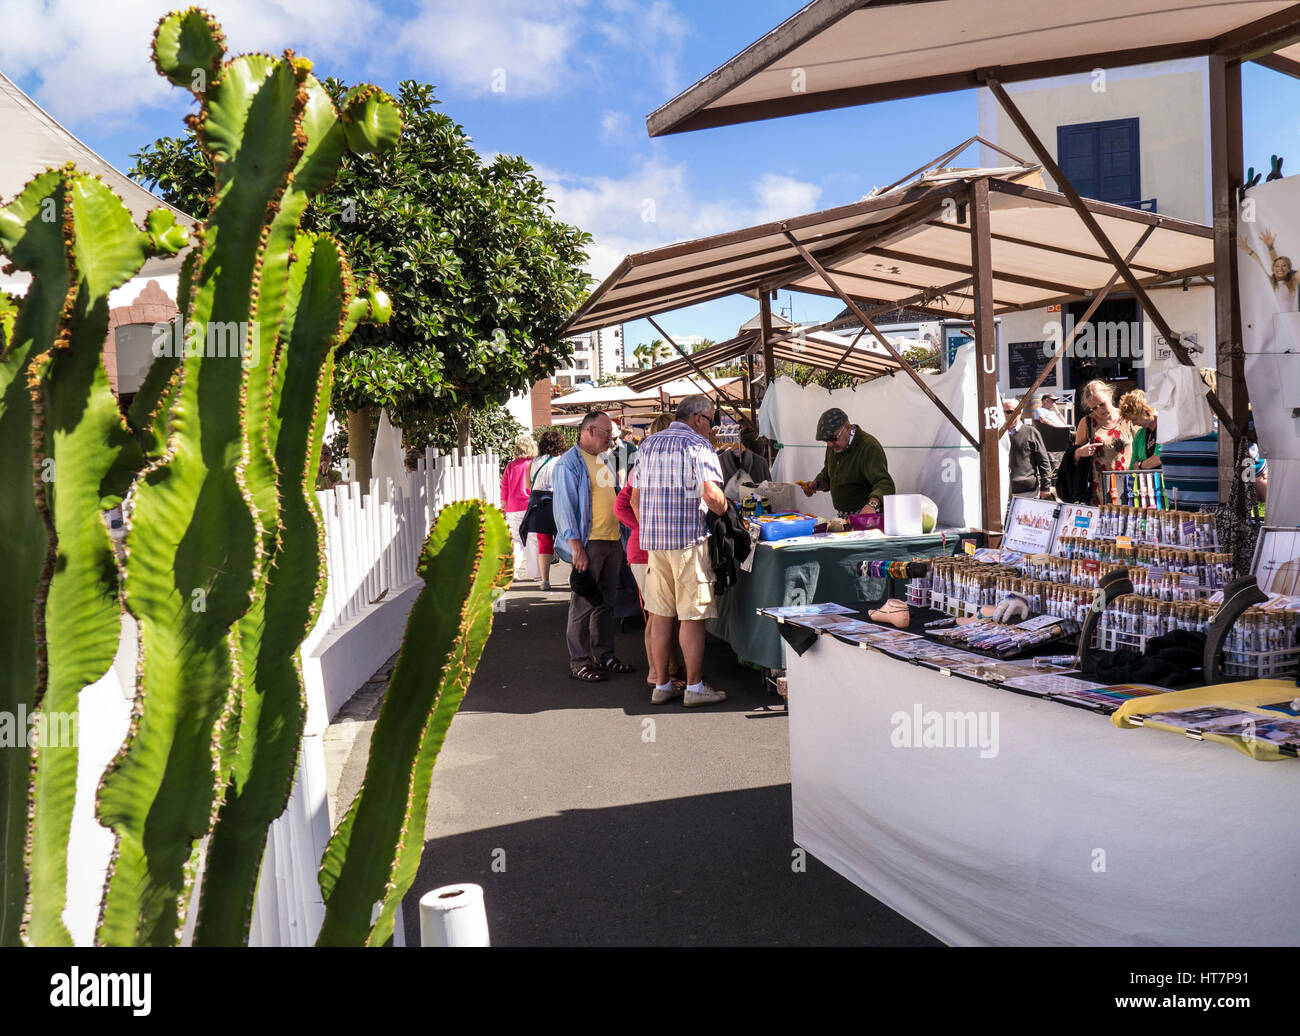 LANZAROTE MARINA RUBICON étals de marché produits du terroir le marché du dimanche et les touristes avec cactus typique en premier plan Lanzarote Iles Canaries Espagne Banque D'Images